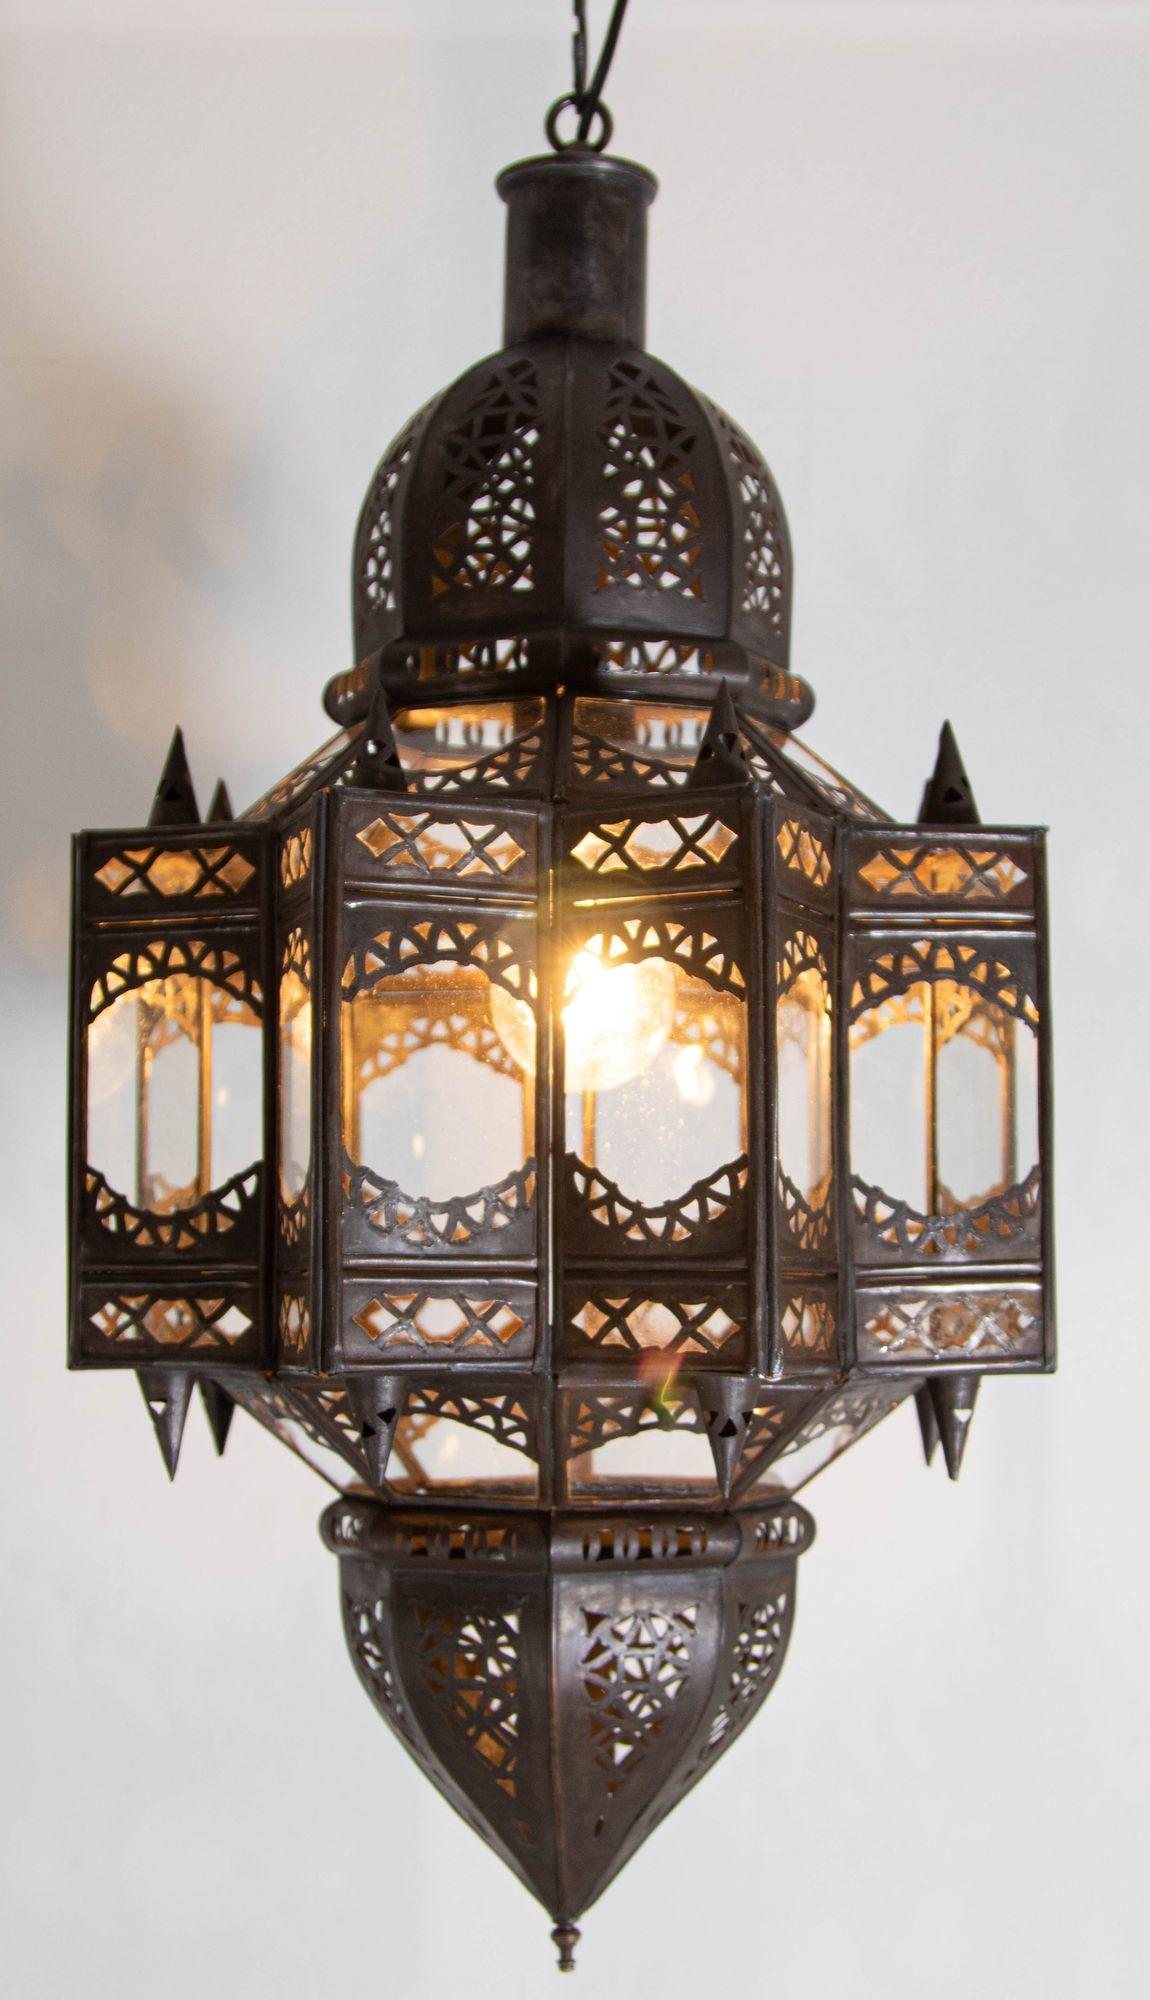 Lanterne marocaine vintage en forme d'étoile en verre clair et métal.
Pendentif lanterne en verre clair en forme d'étoile, fabriqué à la main par des artisans marocains qualifiés à Marrakech.
Le métal est découpé à la main dans des motifs islamiques